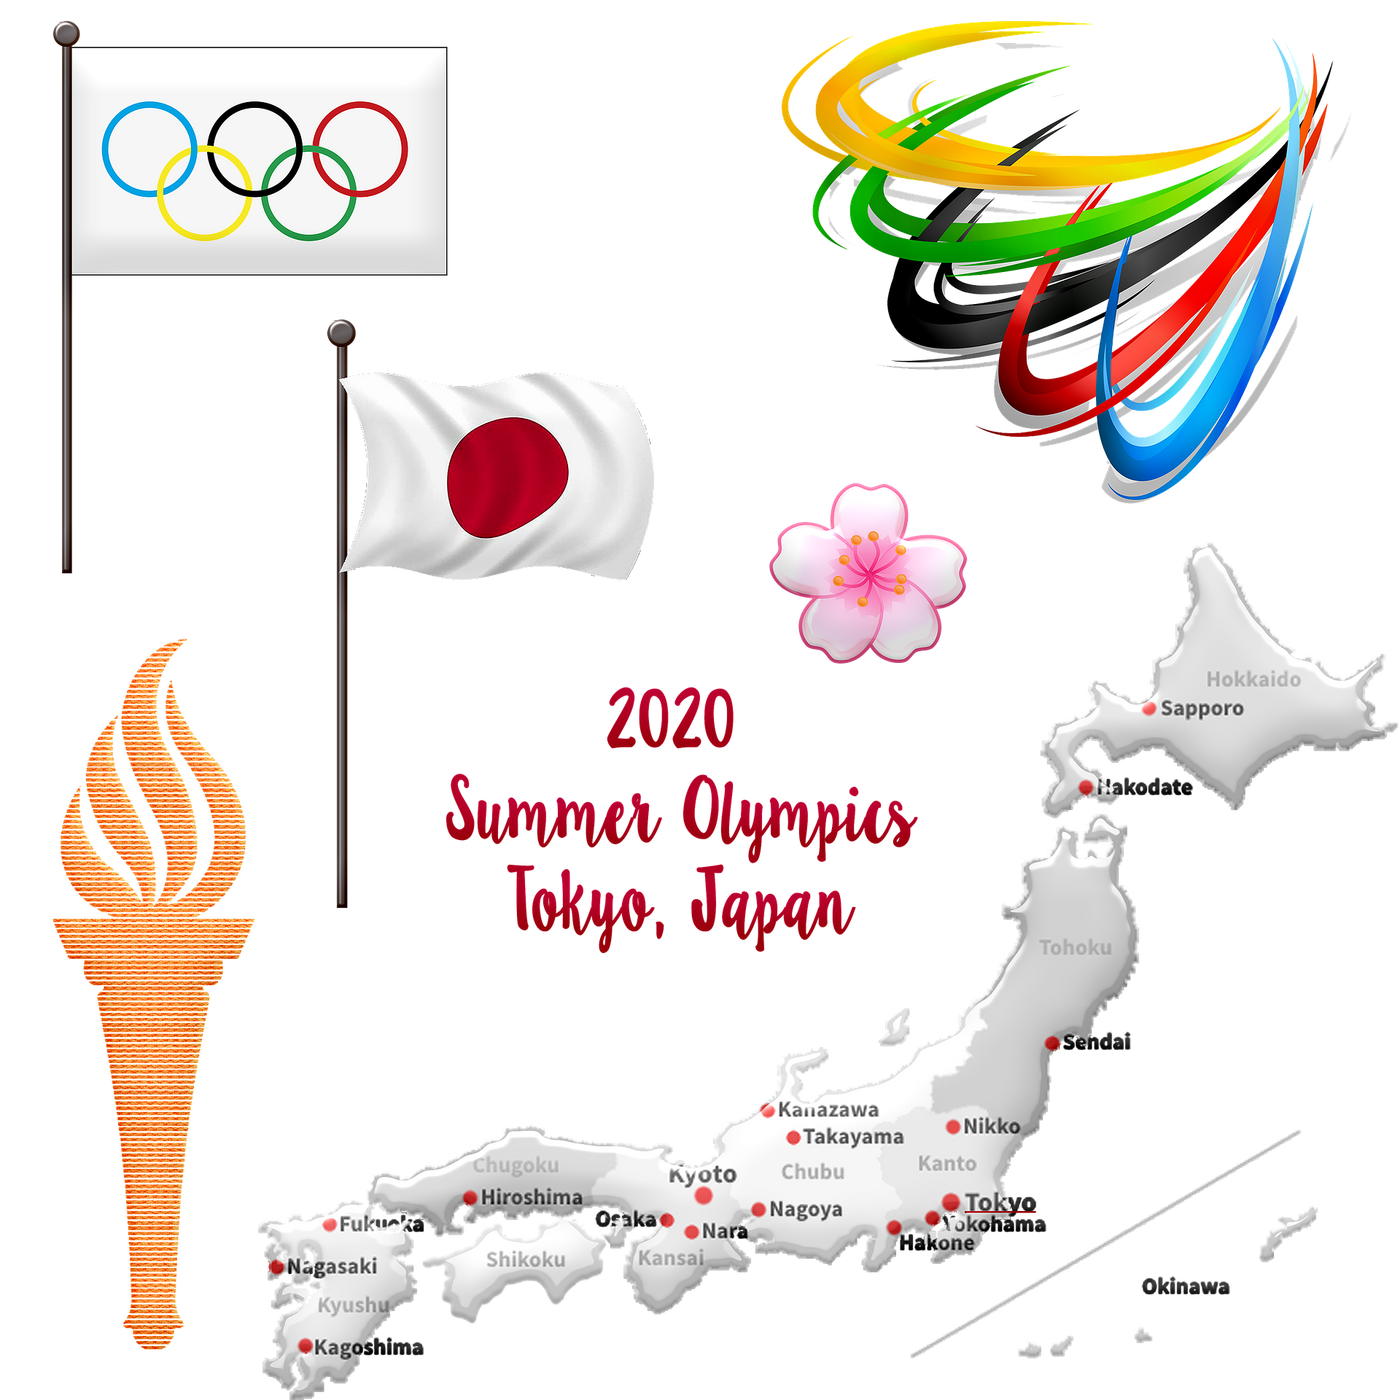 東京2020オリンピック・パラリンピック交通規制に伴う配送遅延の可能性について